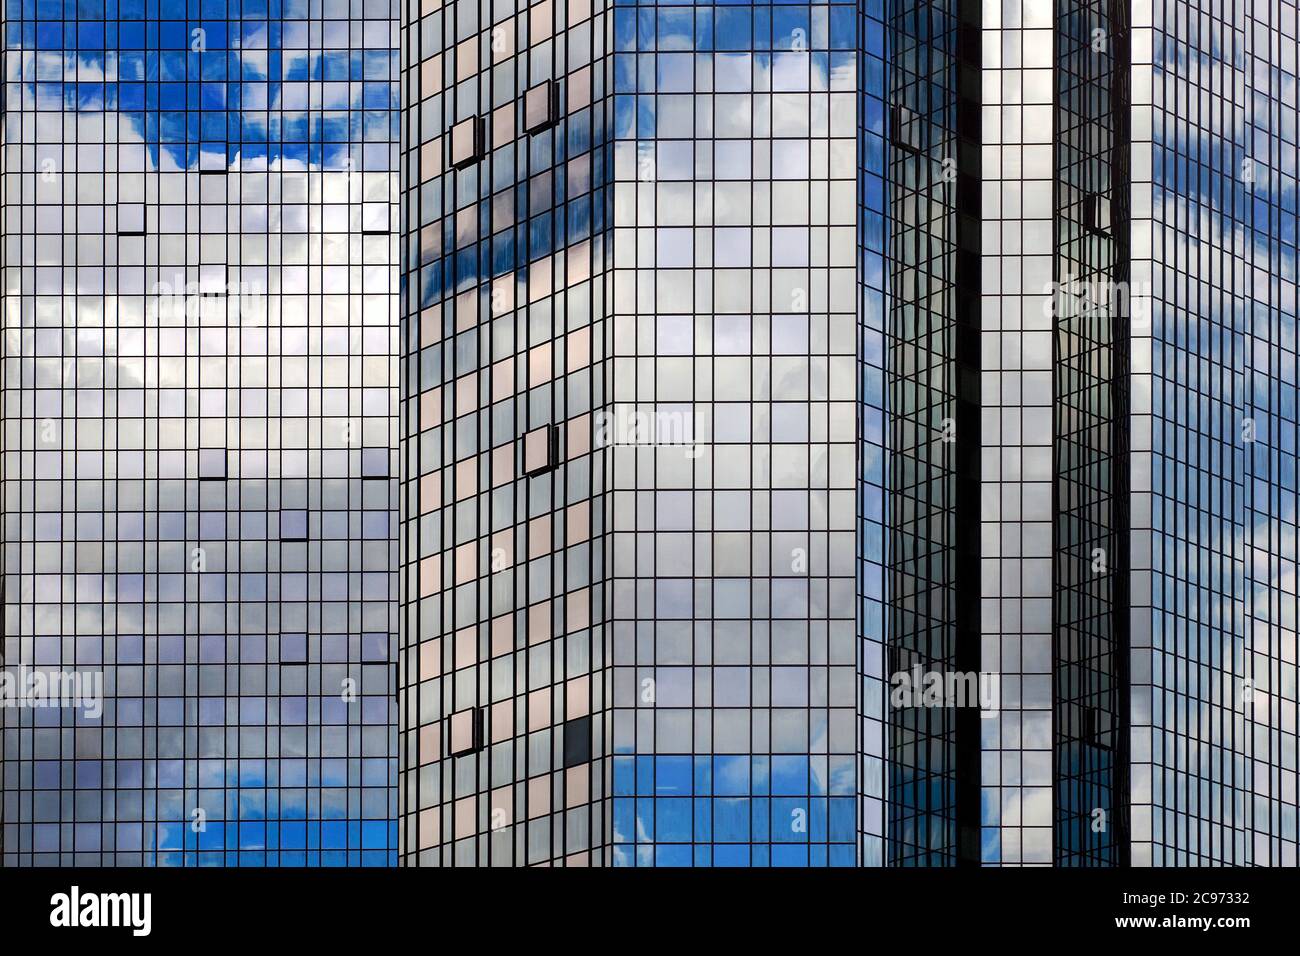 Cielo e nuvole che si specchiano nella facciata in vetro della sede centrale del Deutsche Bank Group, Germania, Assia, Francoforte sul meno Foto Stock